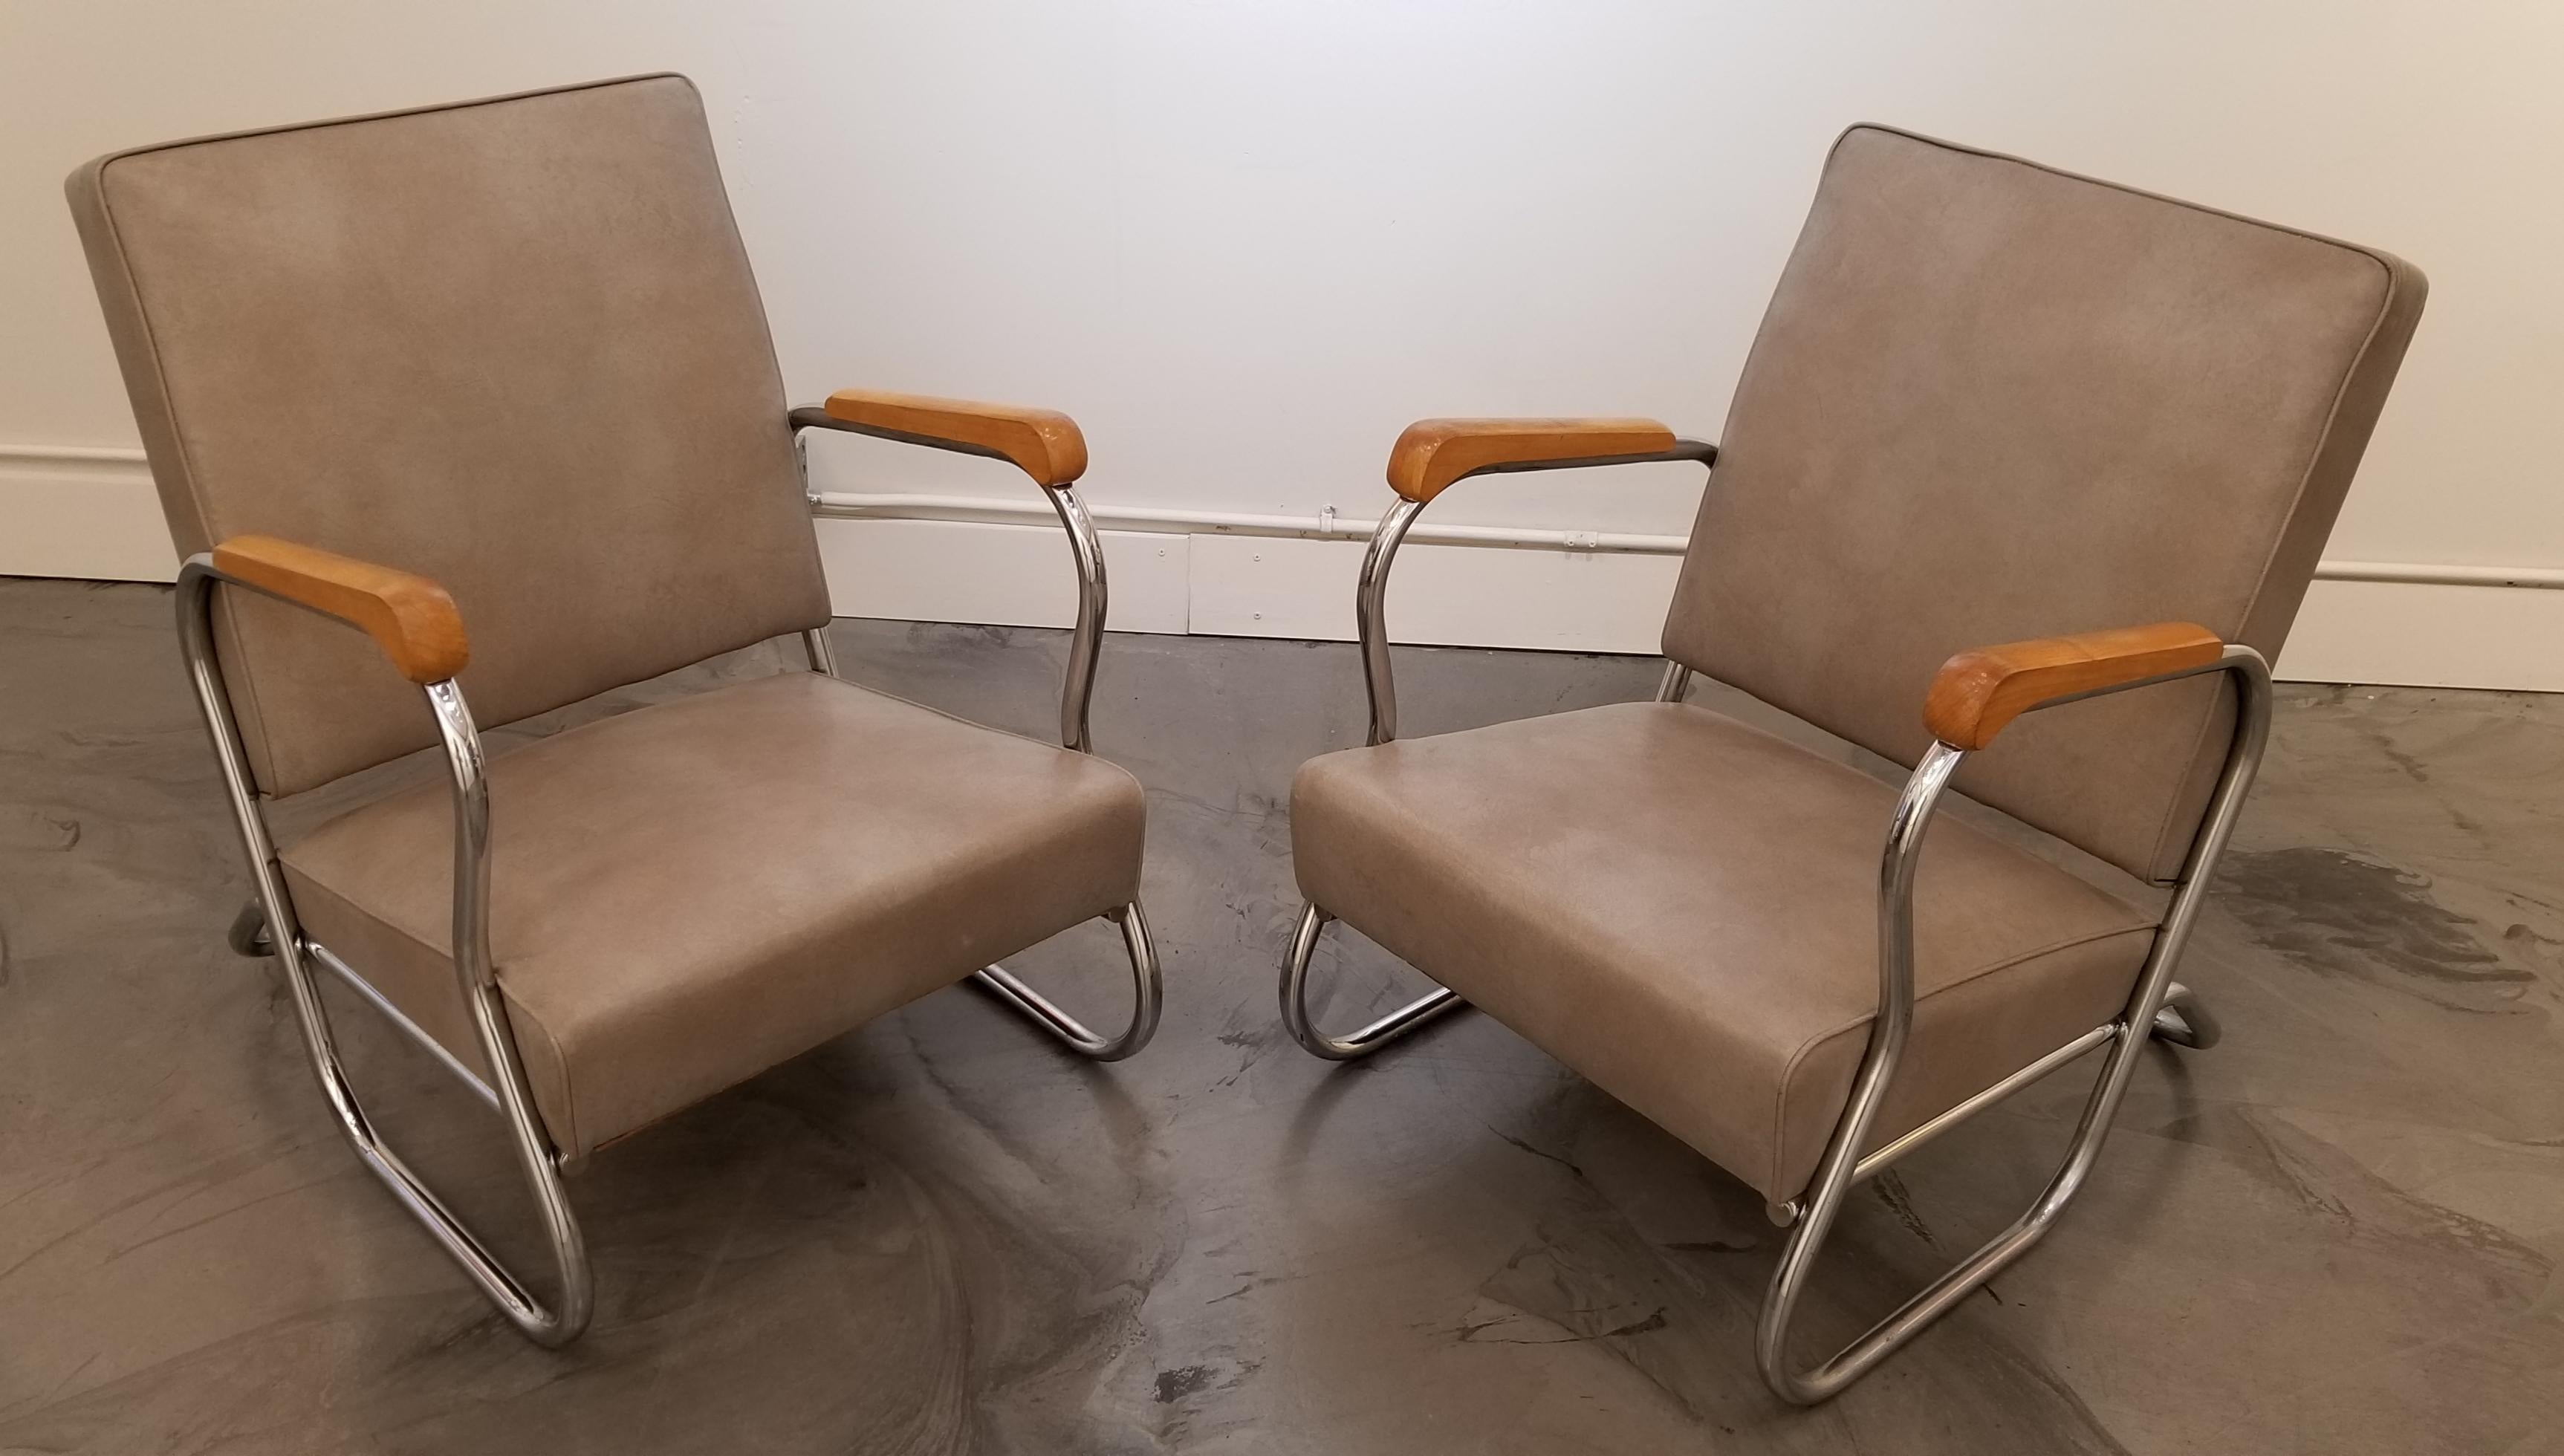 1930s Industrial Modern Chrome Club Chairs 3